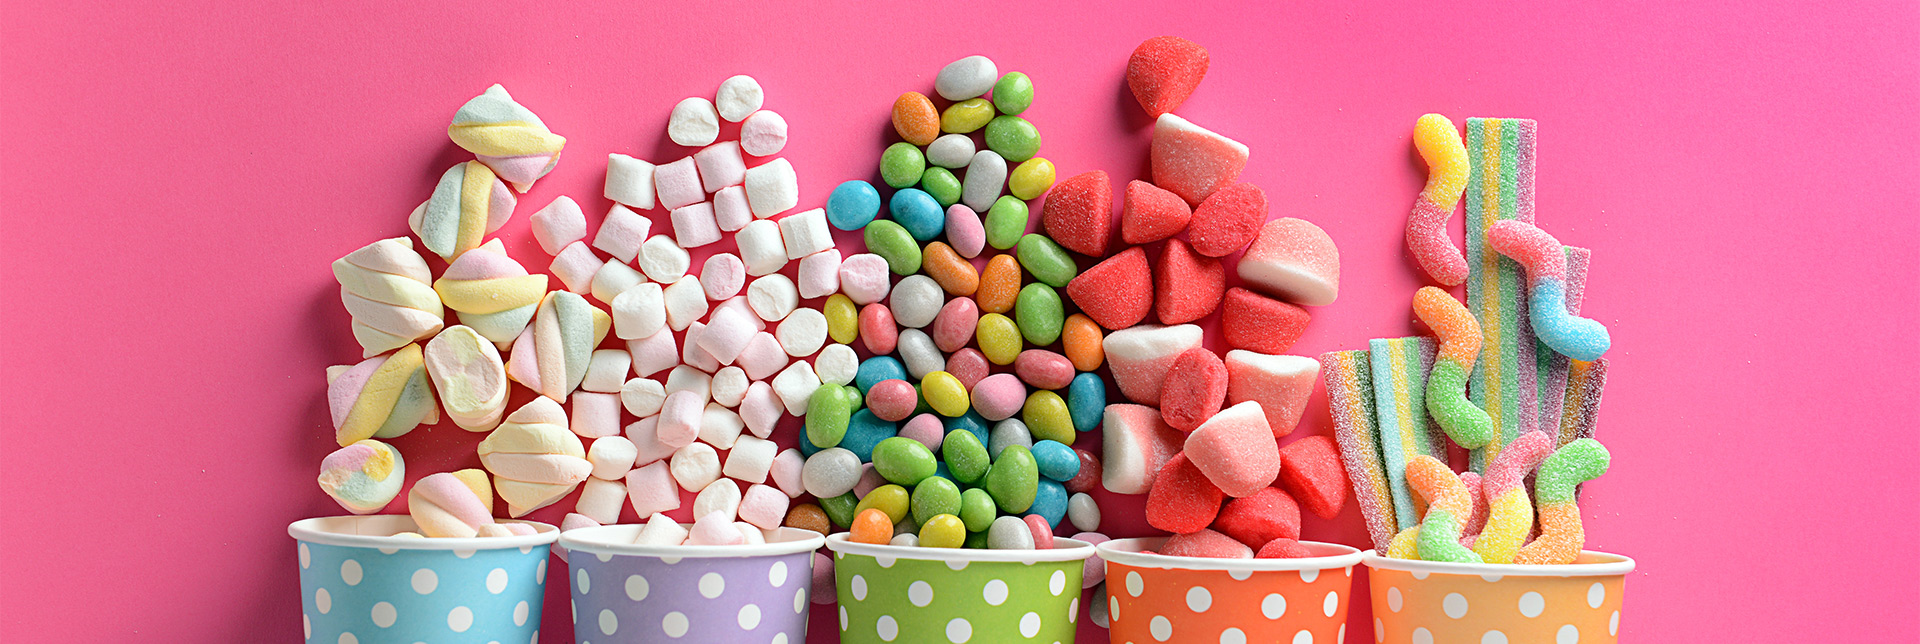 7 Süßstoffe und Zuckeralternativen 